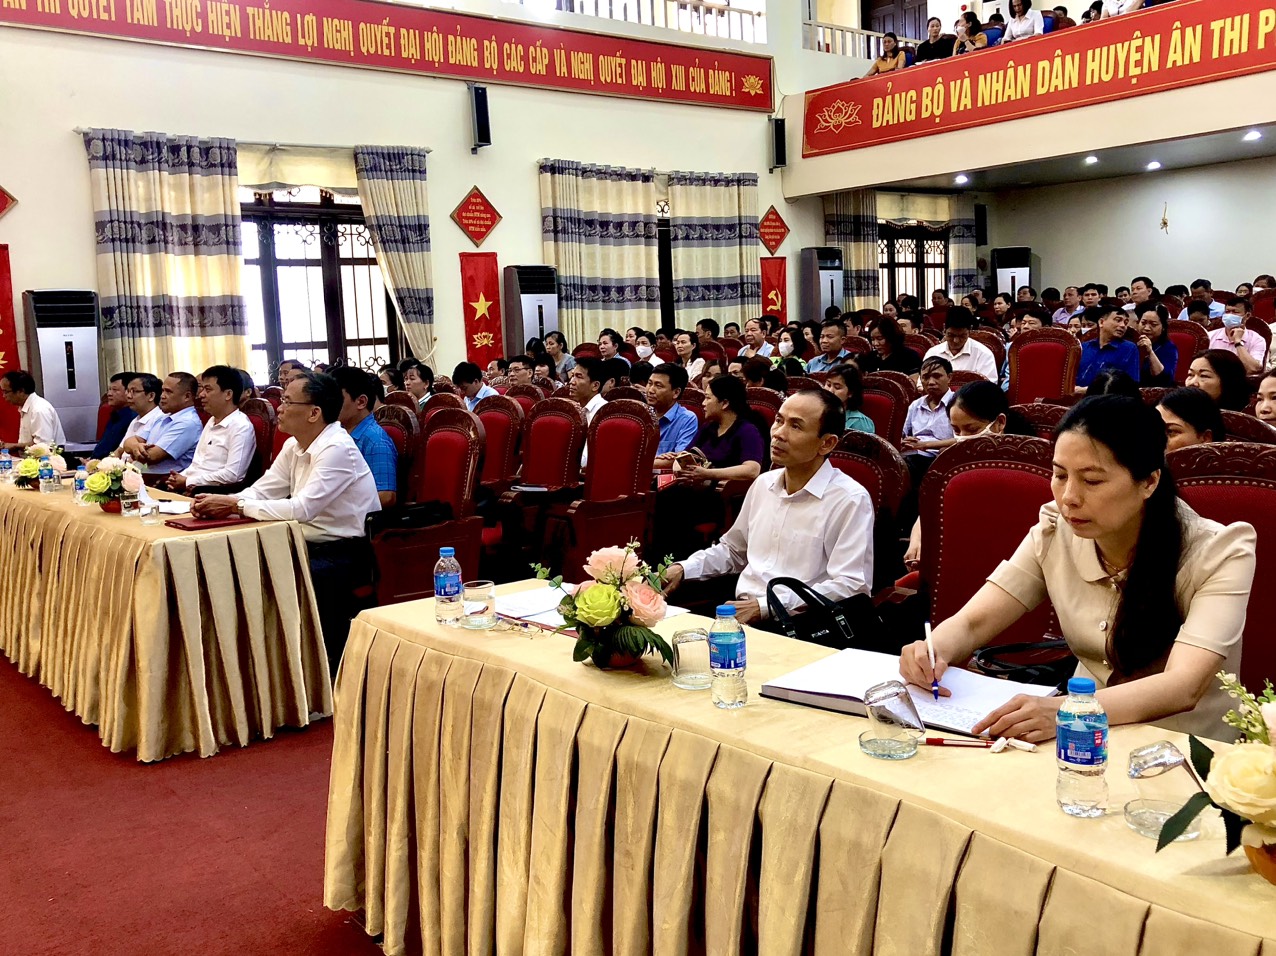 Trường chính trị Nguyễn Văn Linh - Khai giảng lớp bồi dưỡng cập nhật kiến thức cho các đồng chí cán bộ thuộc diện Ban Thường vụ Huyện ủy Ân Thi quản lý